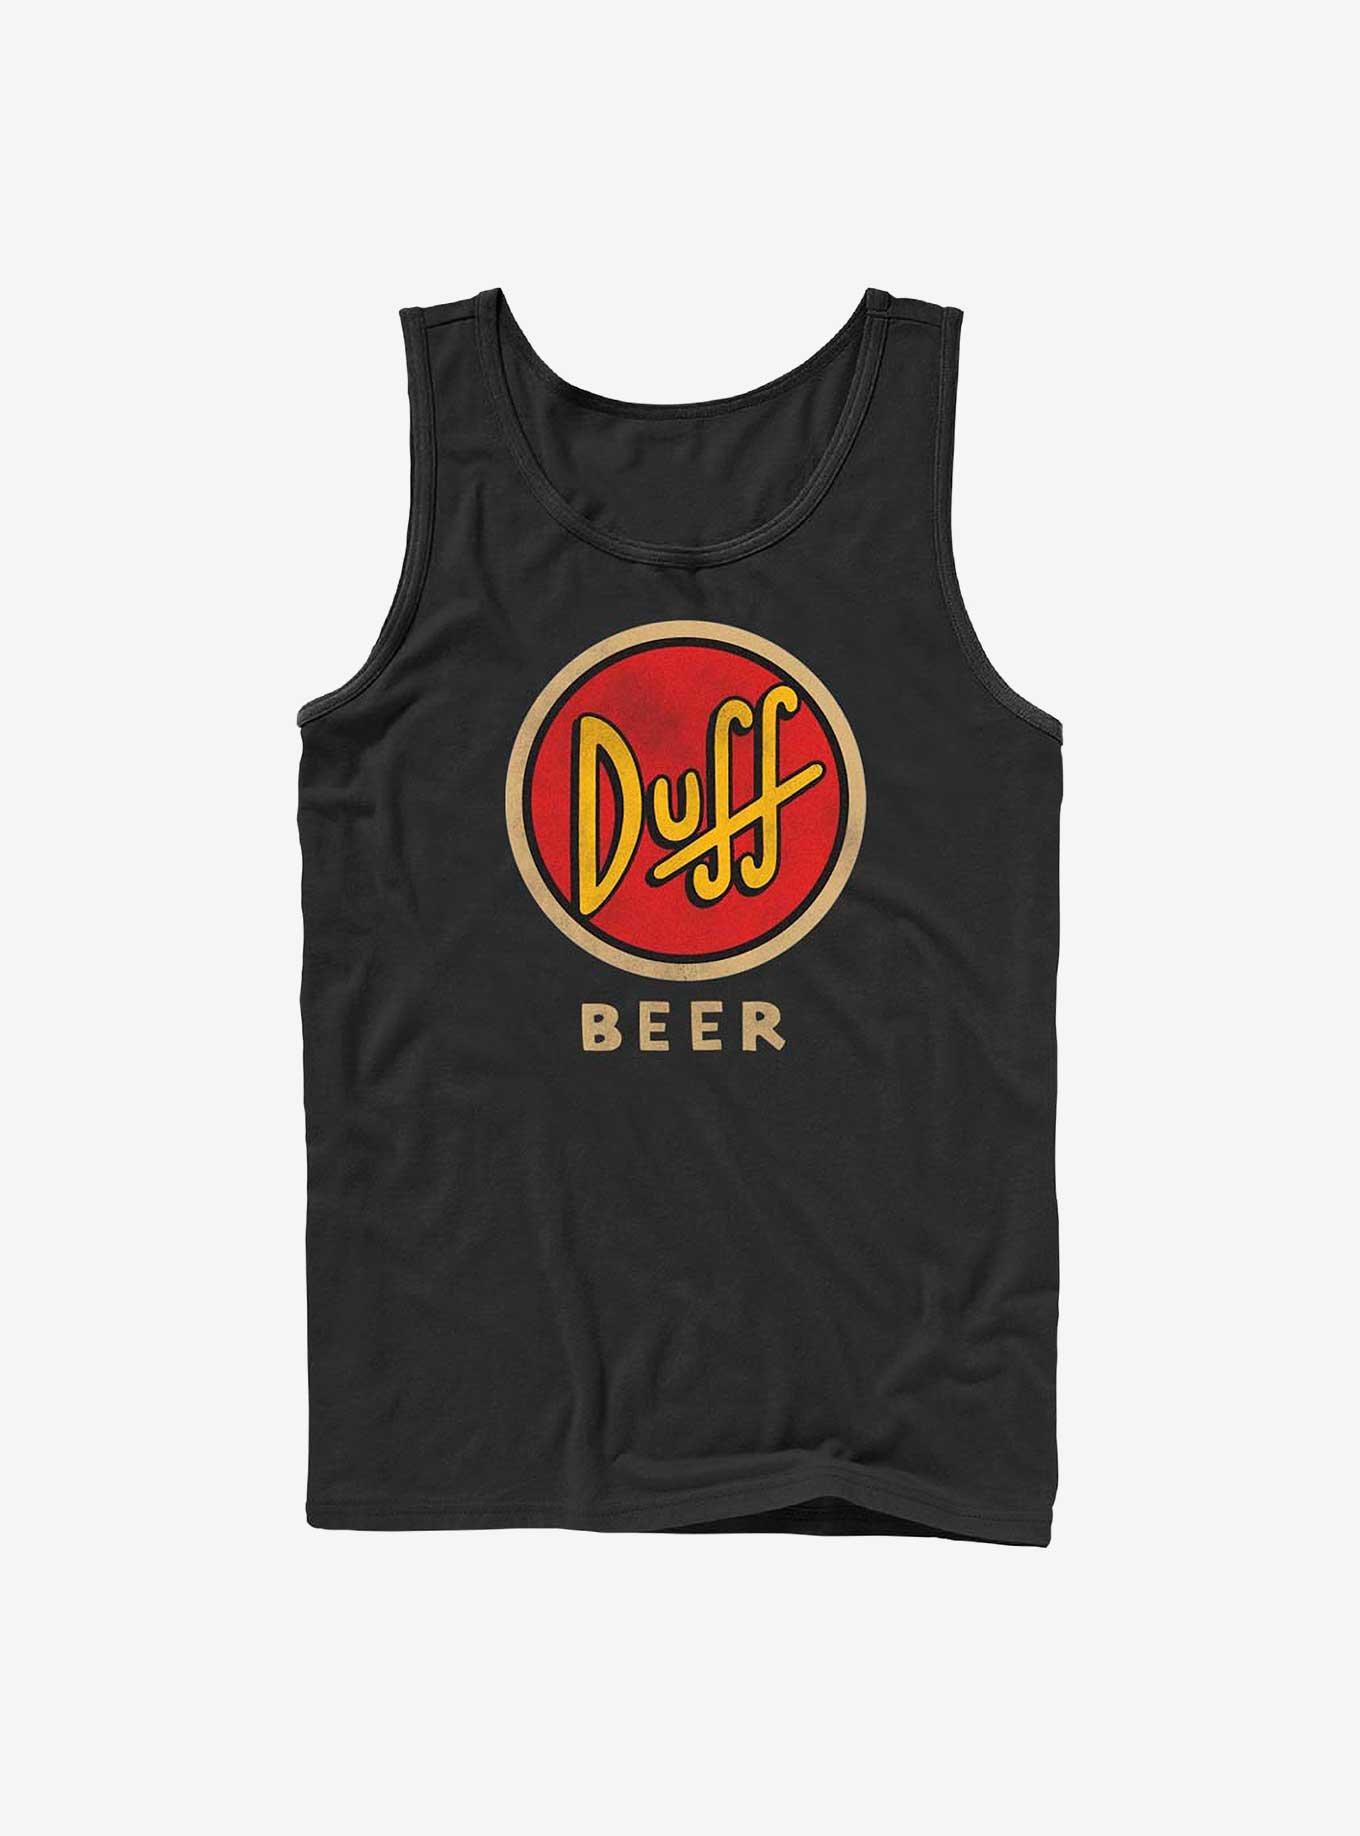 The Simpsons Vintage Duff Beer Tank